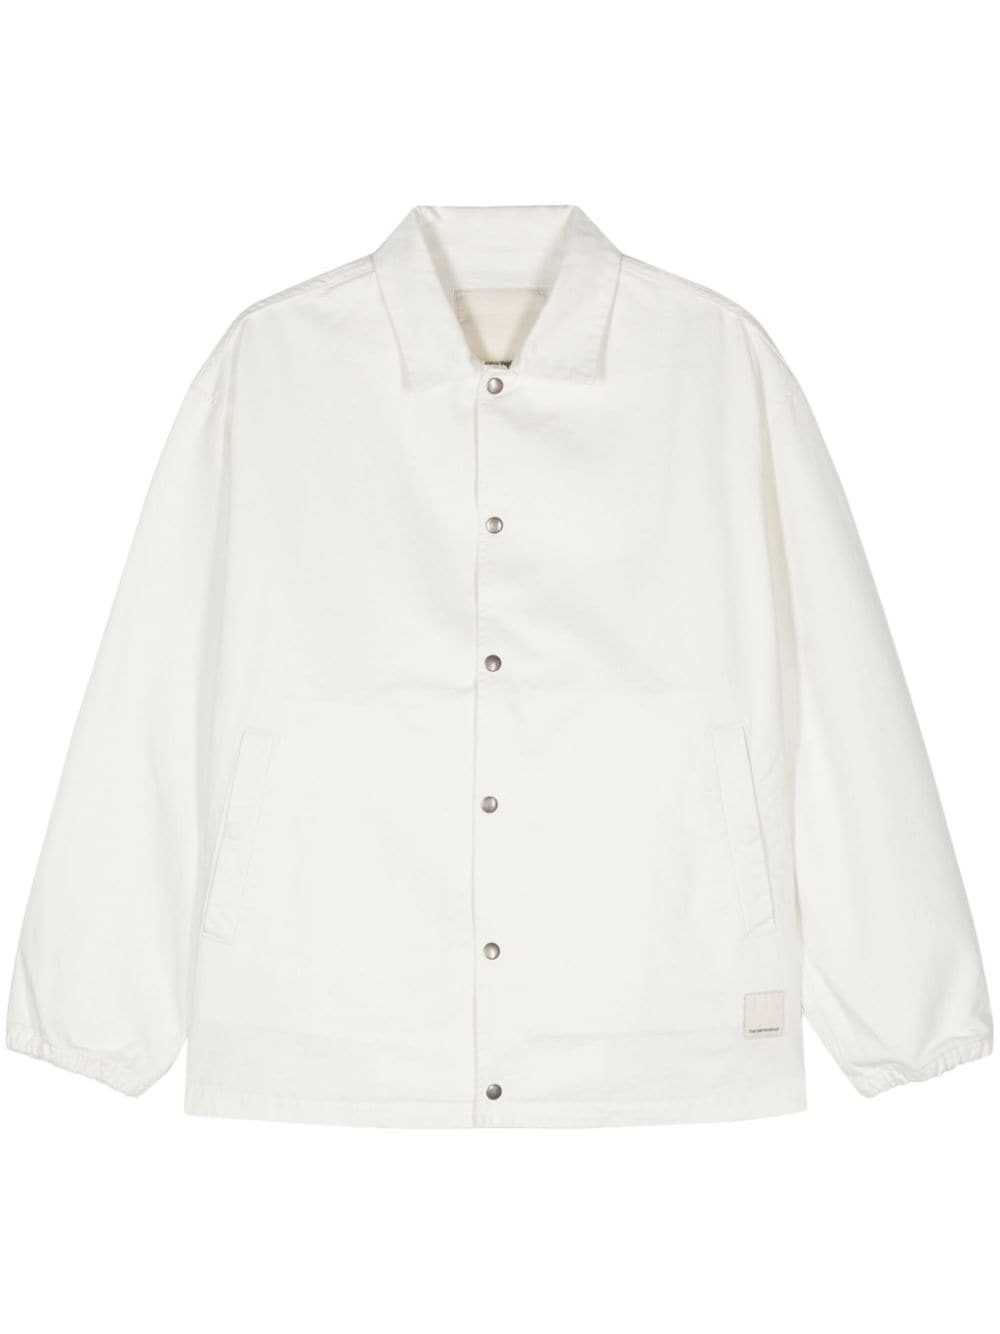 Emporio Armani cotton twill shirt jacket - White von Emporio Armani